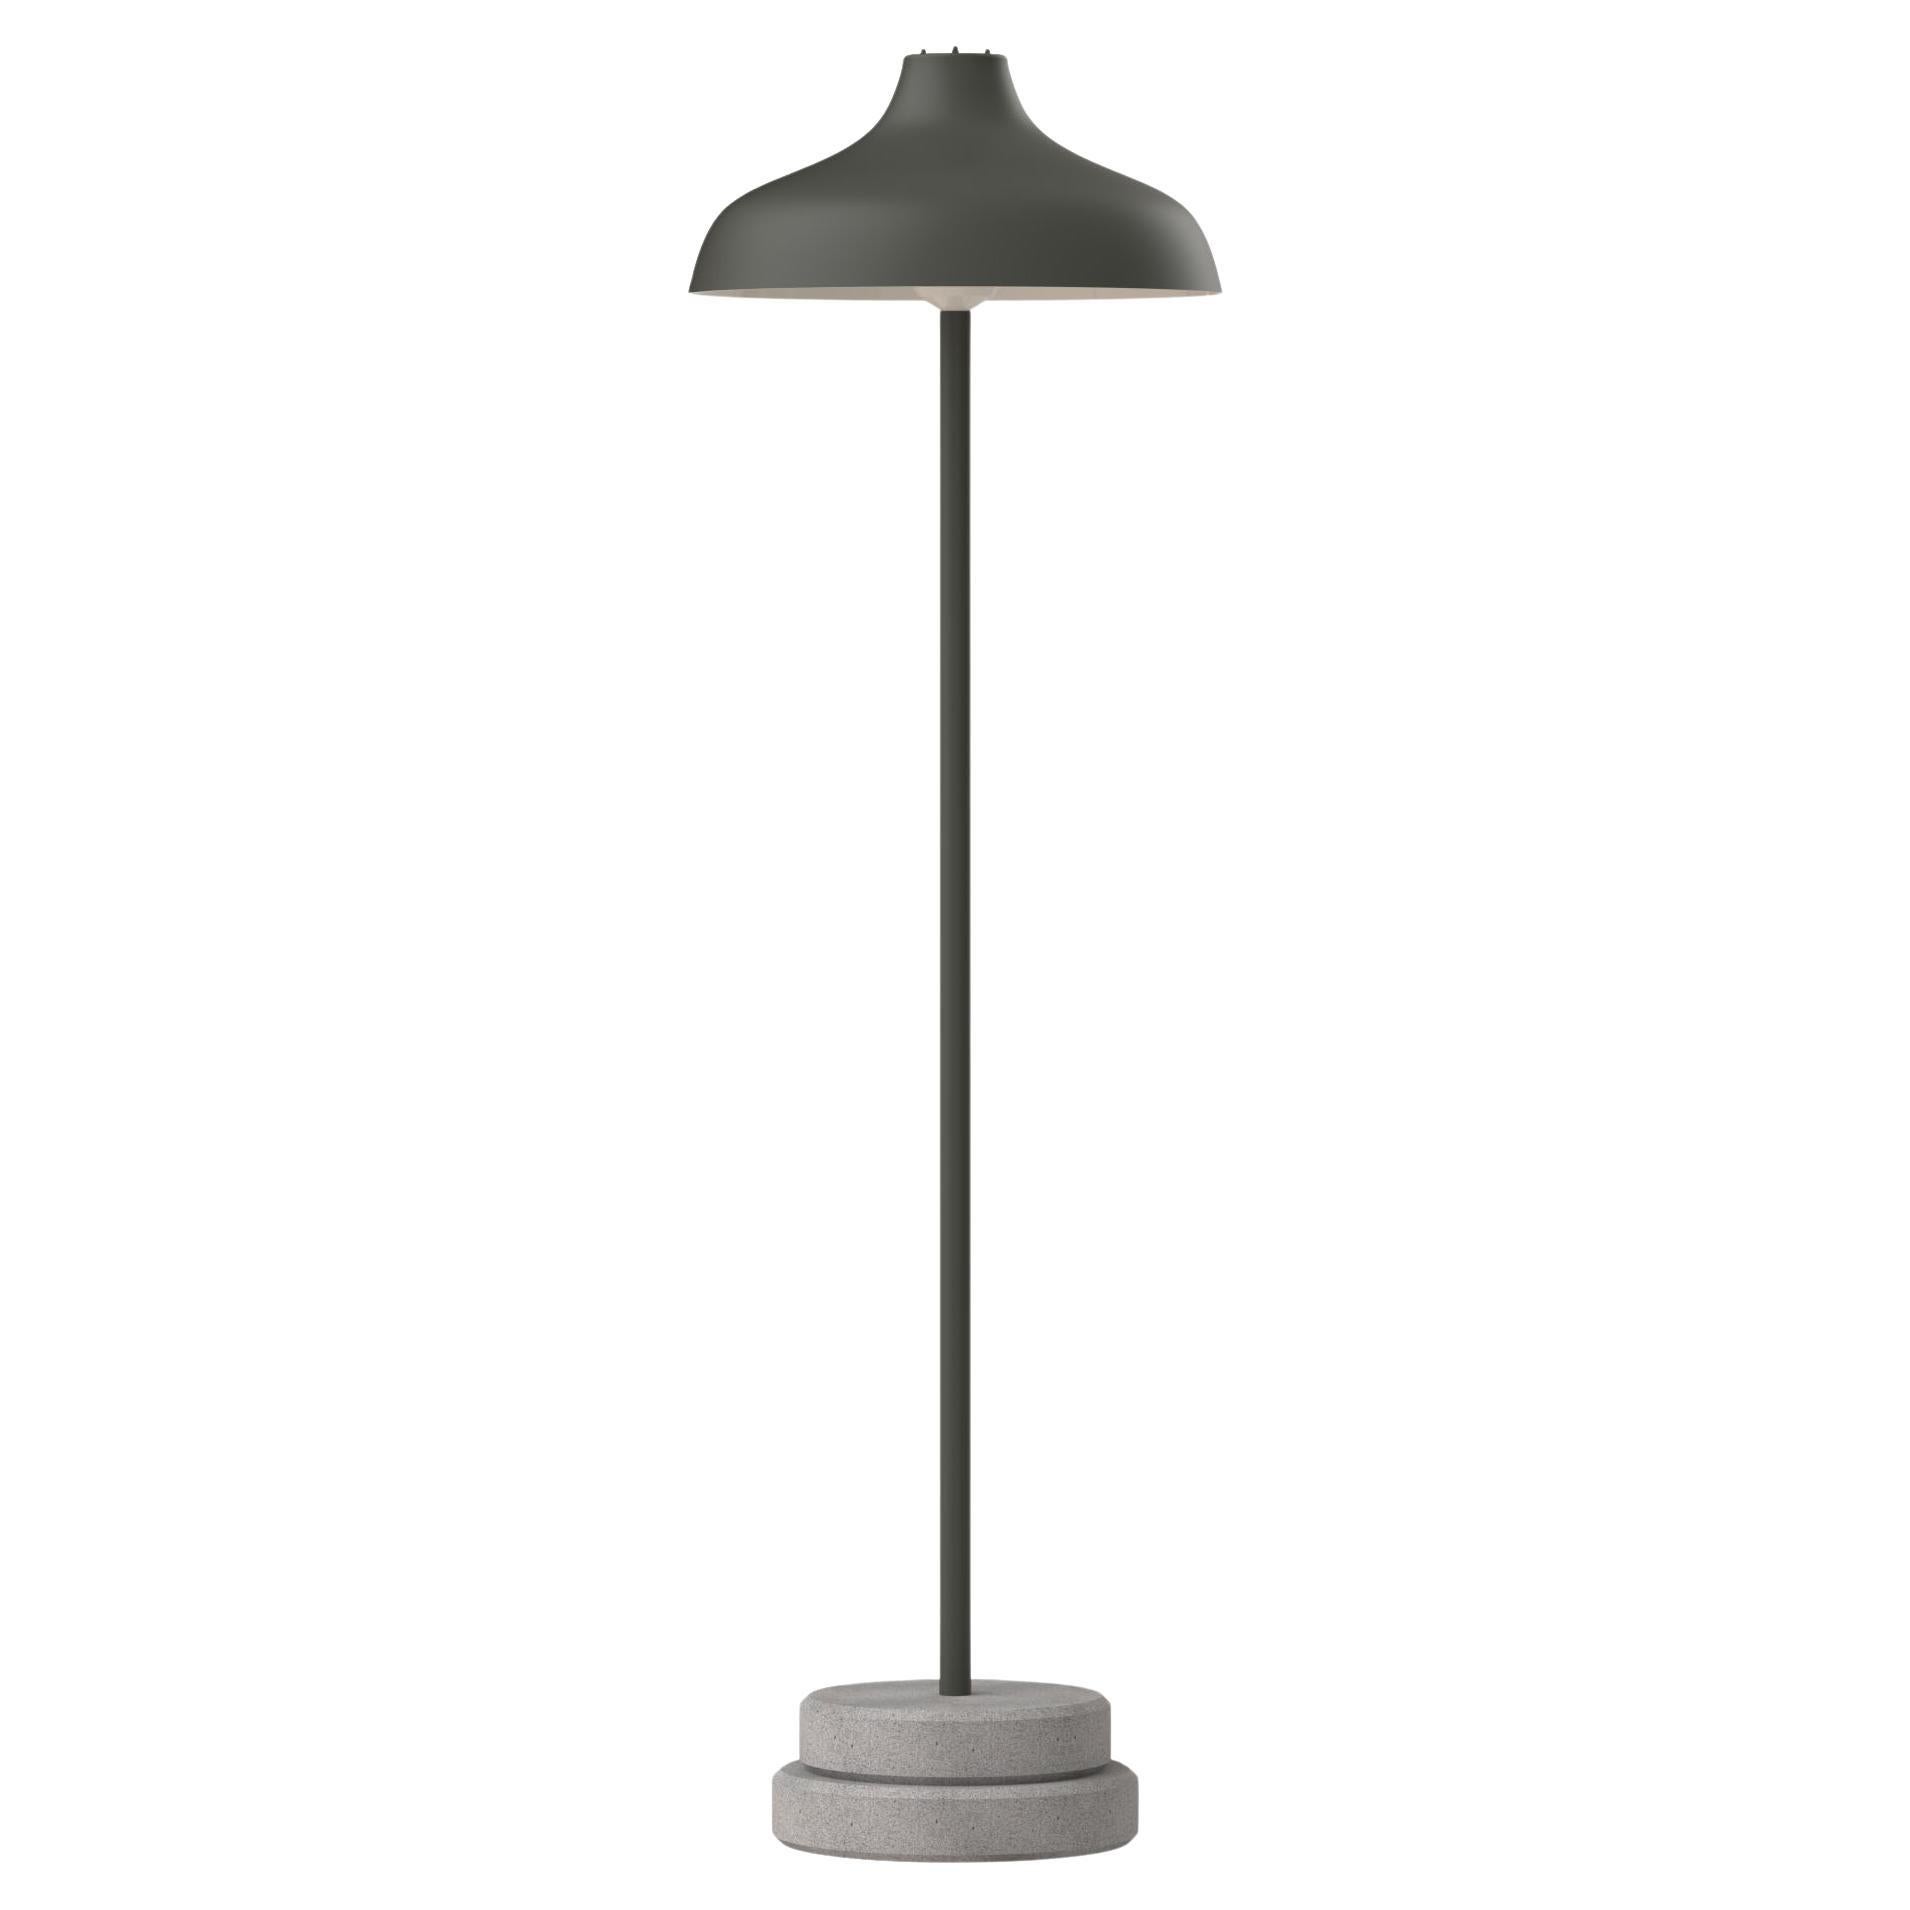 Ignazio Gardella 'Pagoda Piantana' Floor Lamp for Tato Italia in Stone Gray For Sale